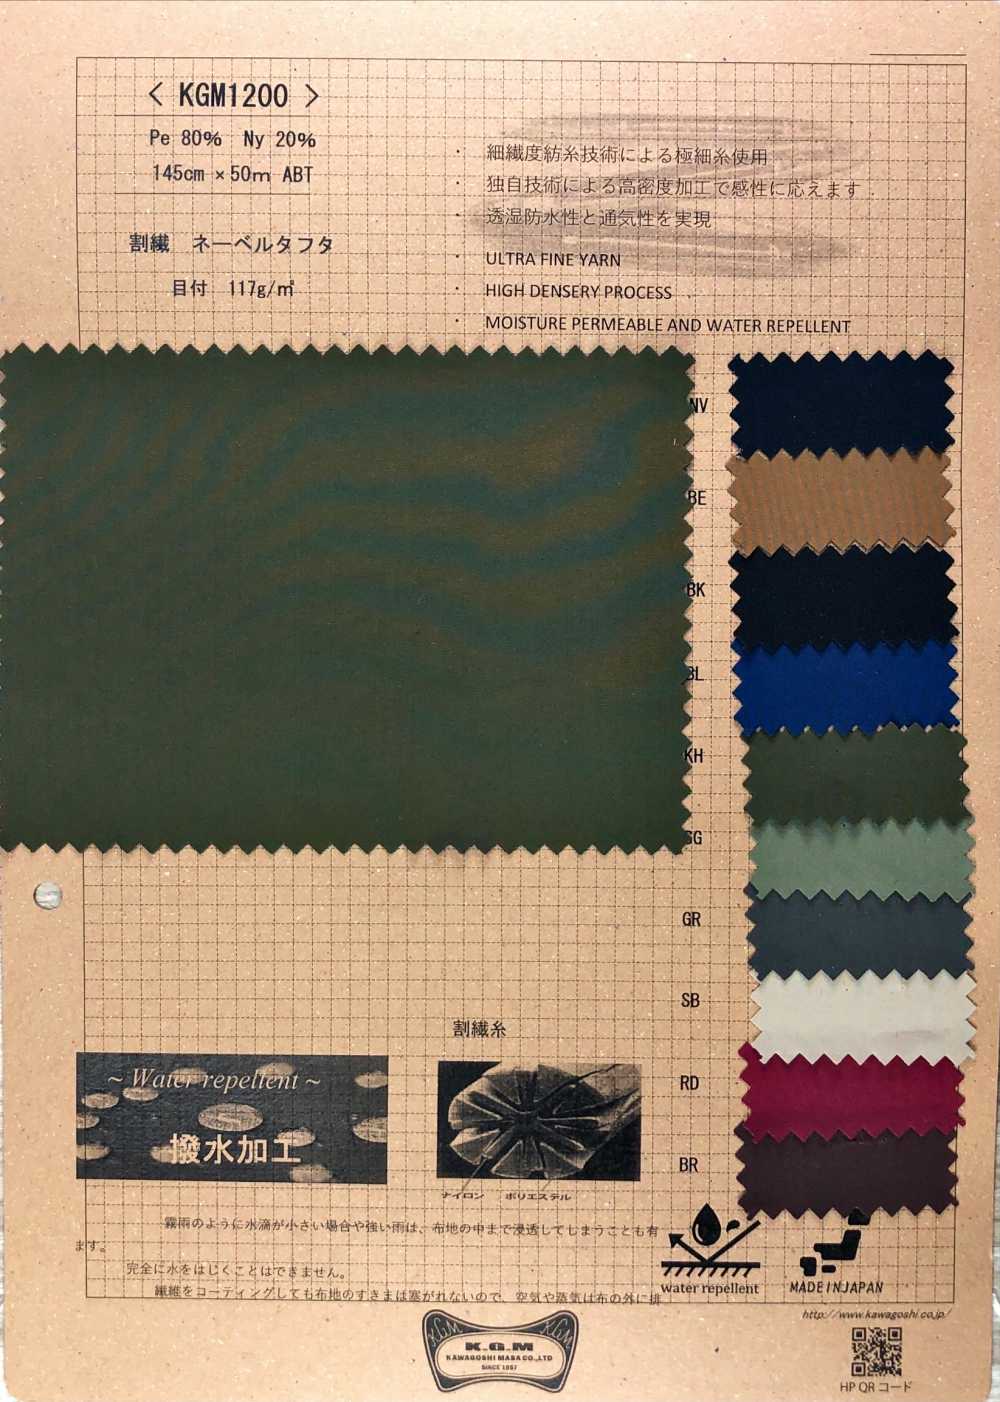 KGM1200 Tafetán Nebel De Fibra Partida[Fabrica Textil] Masaru Kawagoe